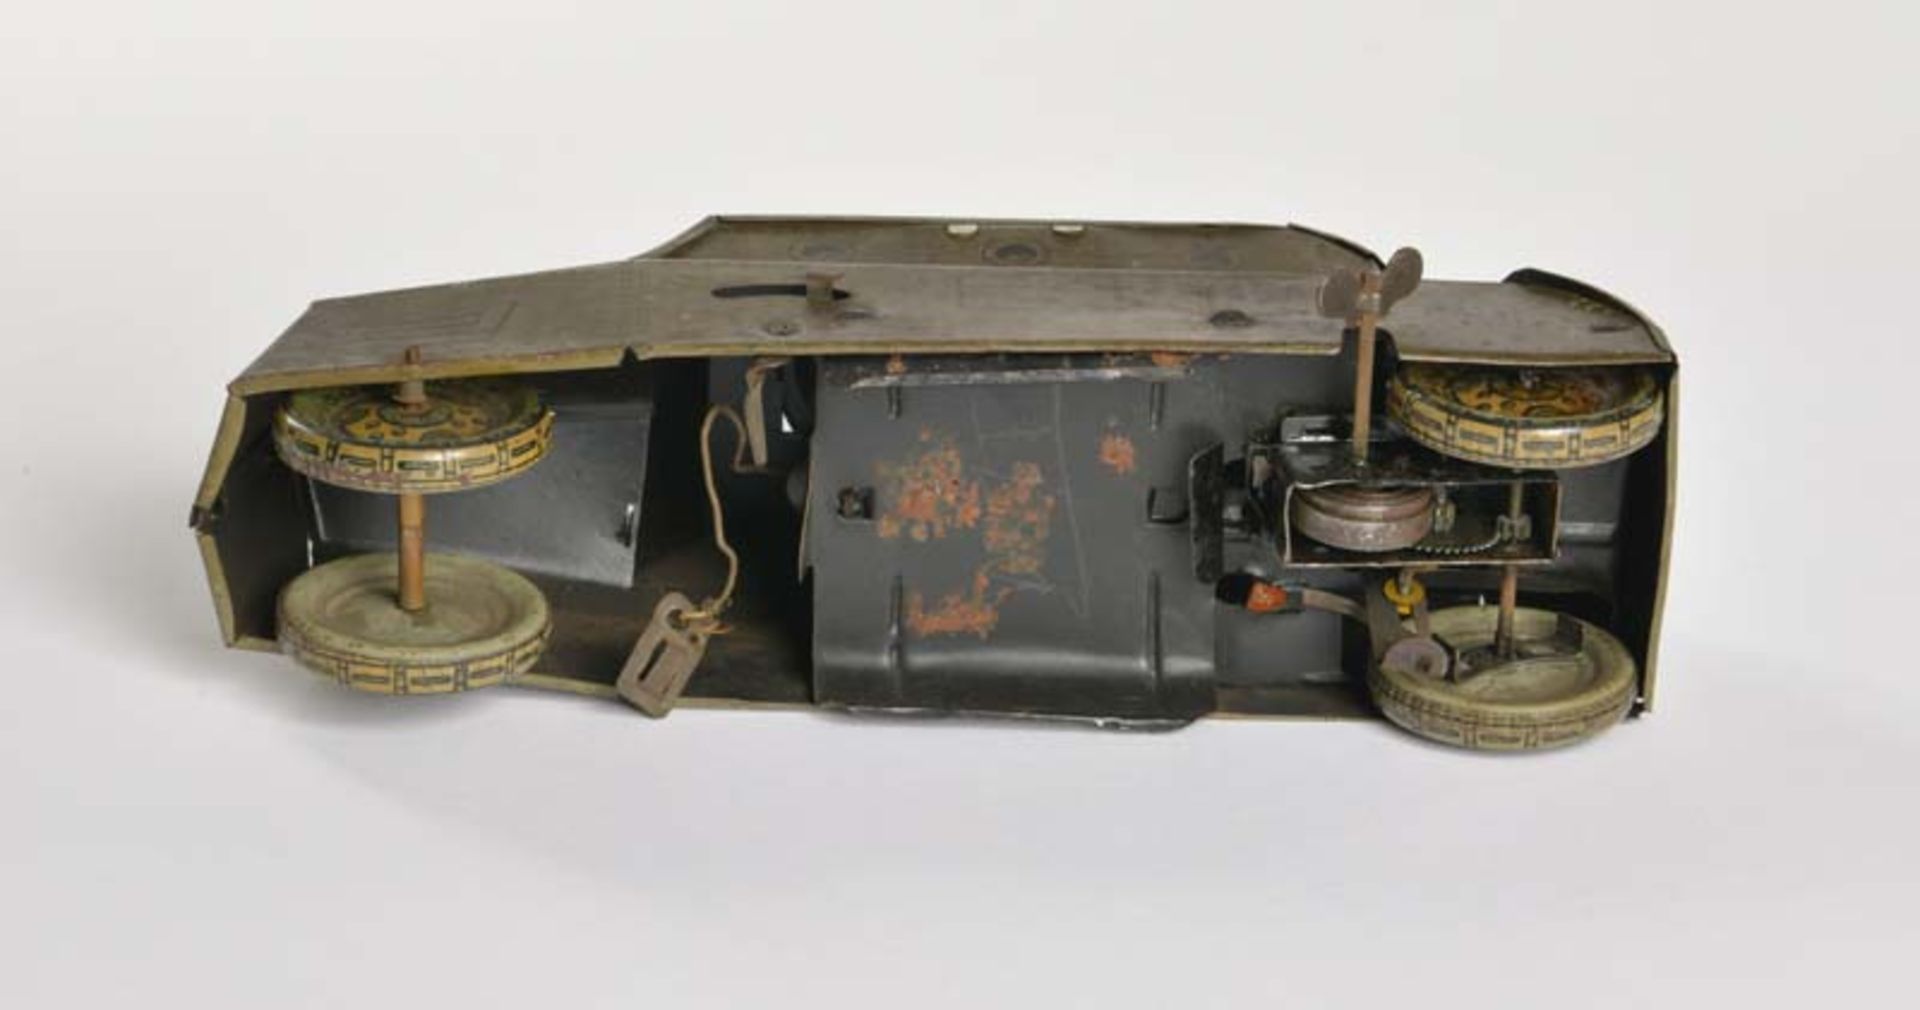 Richard & Co, Panzerwagen, Germany VK, 24 cm, Blech, UW ok, LM, Z 3 - Bild 4 aus 4